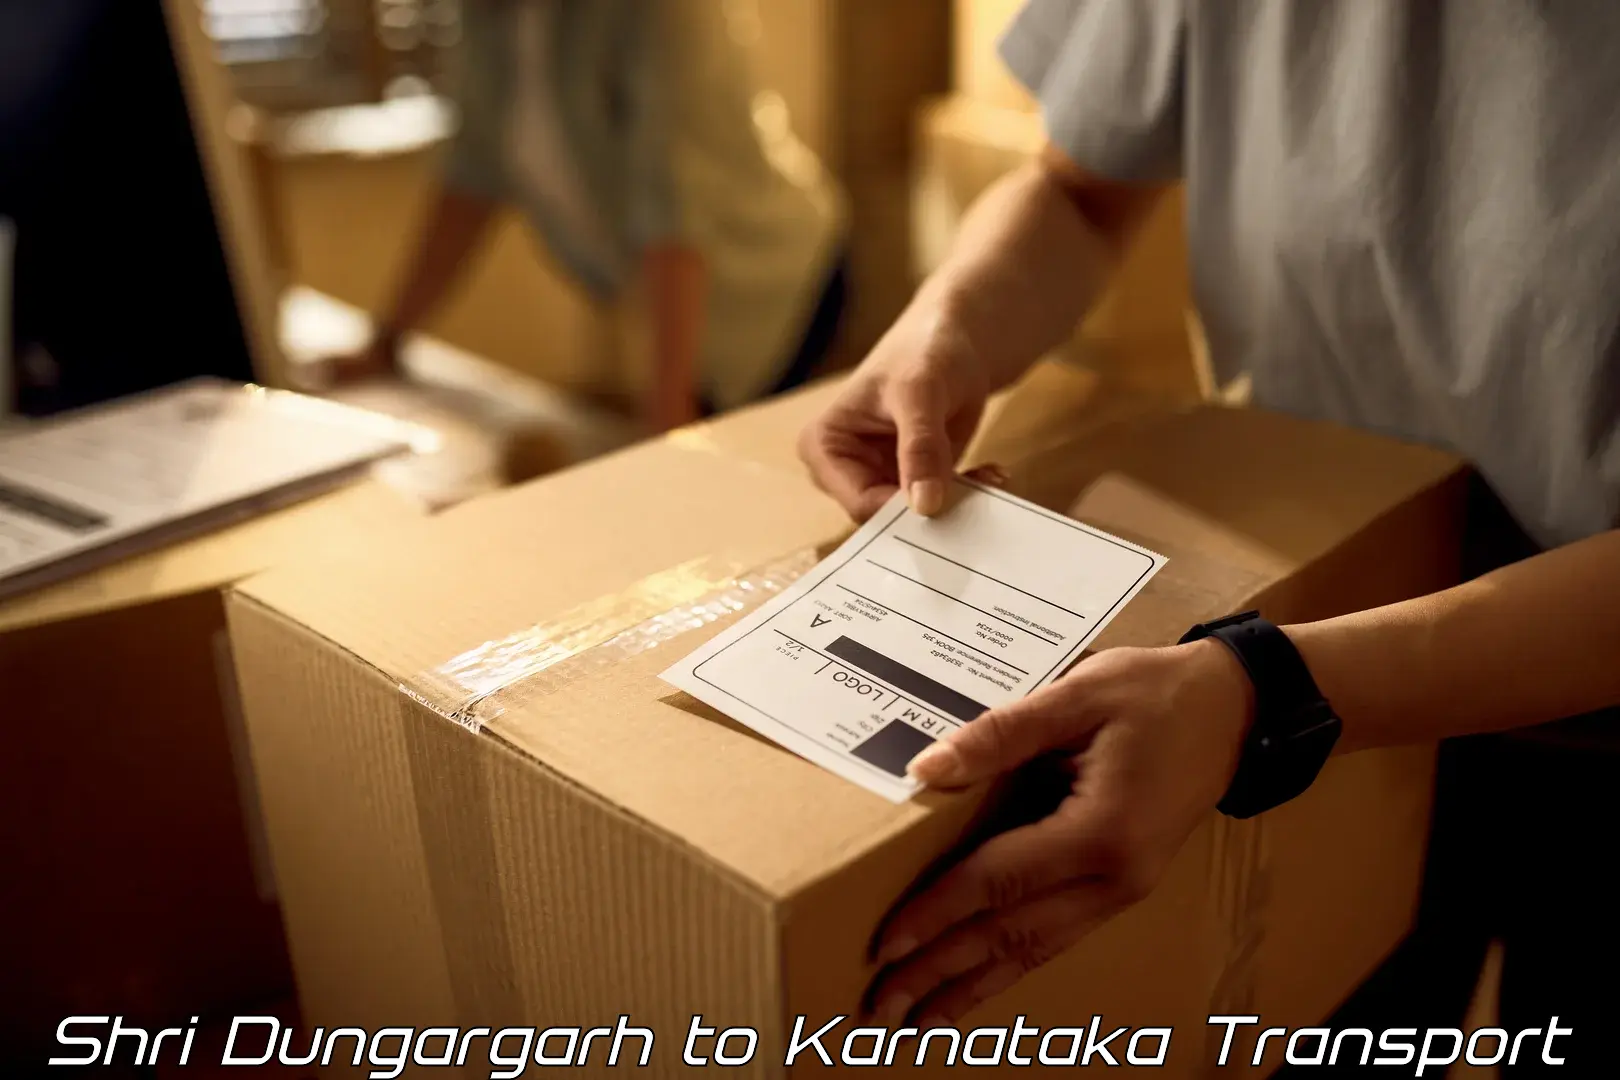 Container transport service Shri Dungargarh to Kudligi